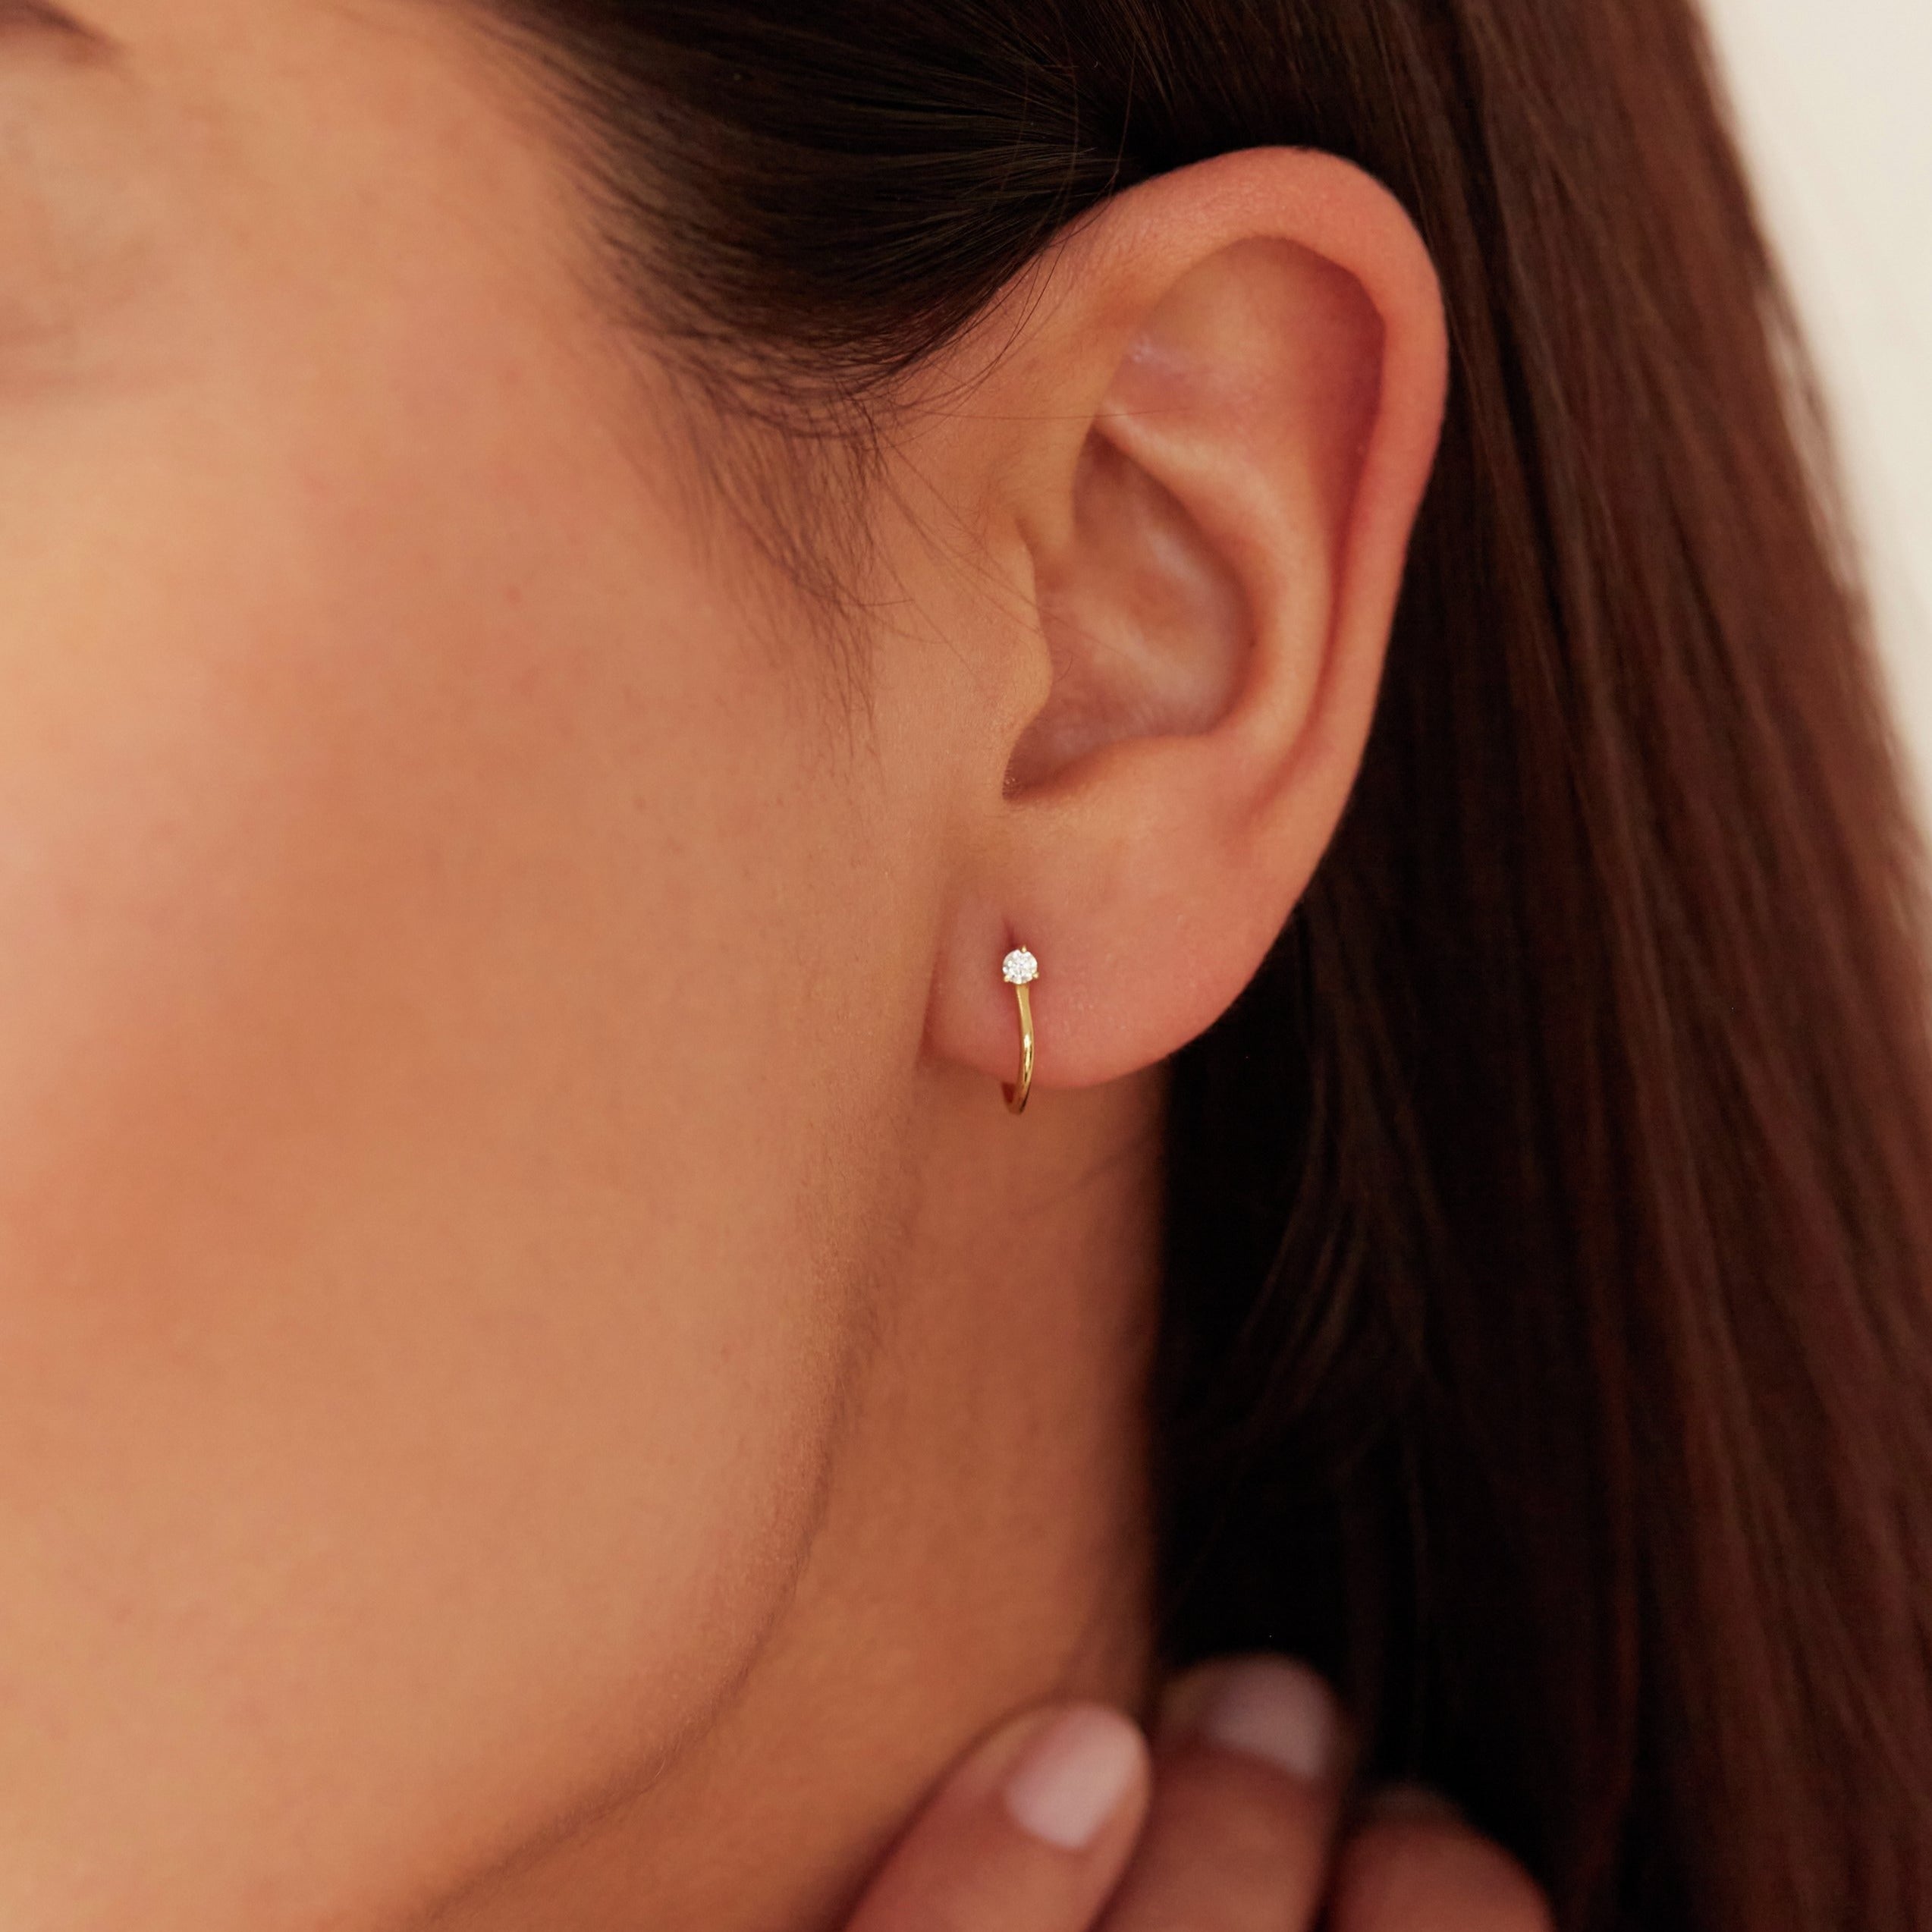 Gold diamond style lobe hoop stud earring in one ear lobe